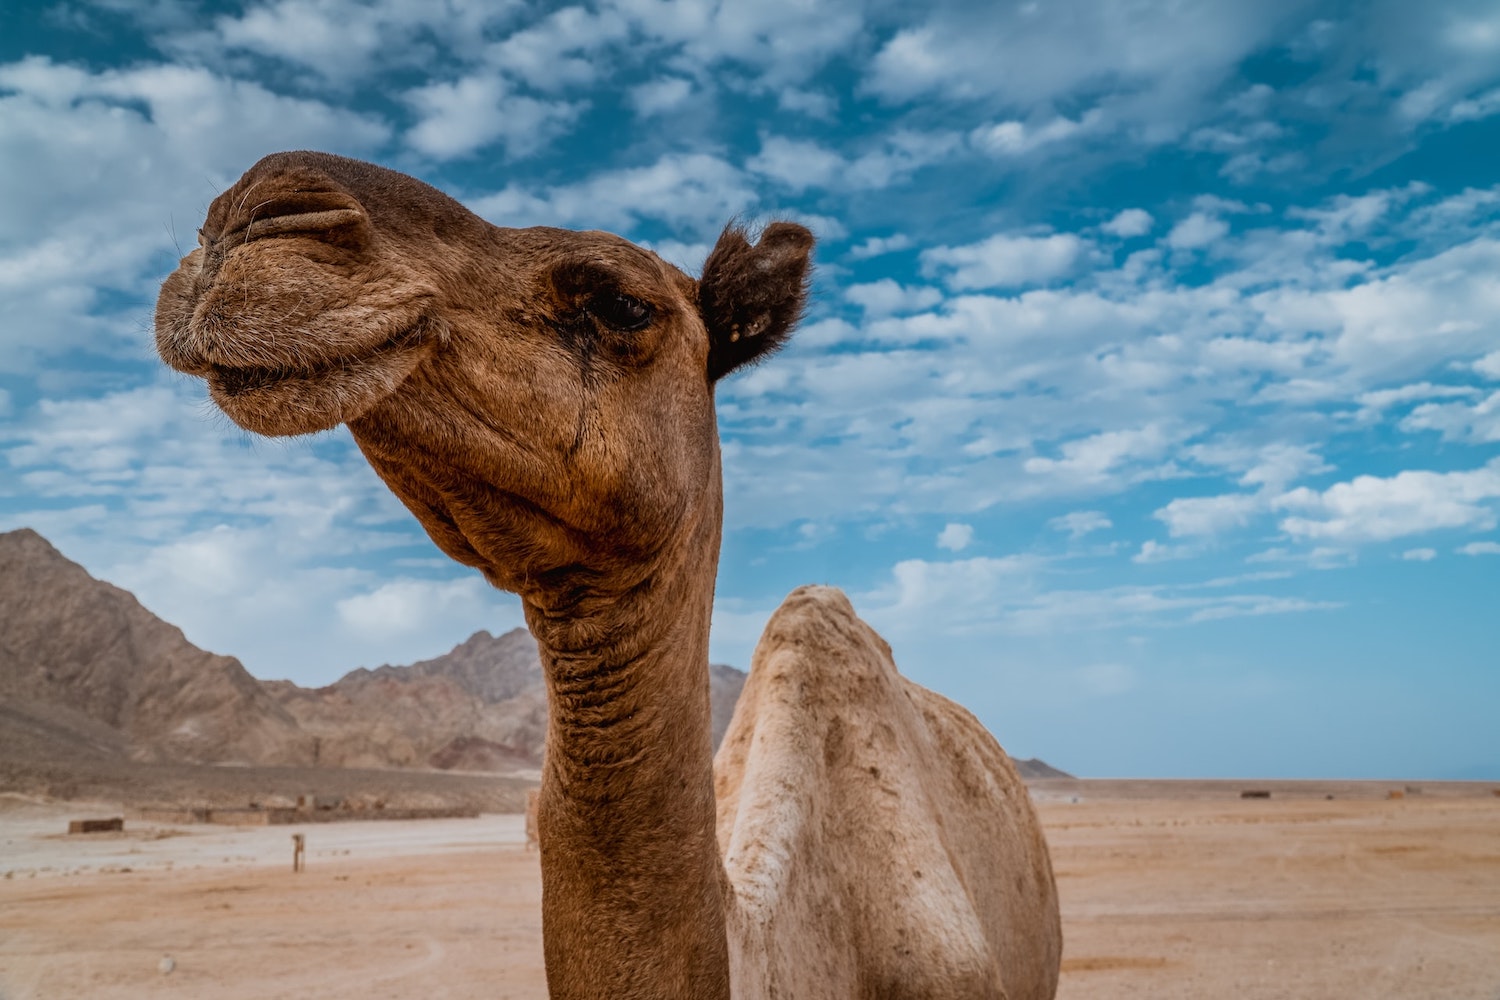 From Bidiyah to Ras al Jins; Sands, Camels, Sea!